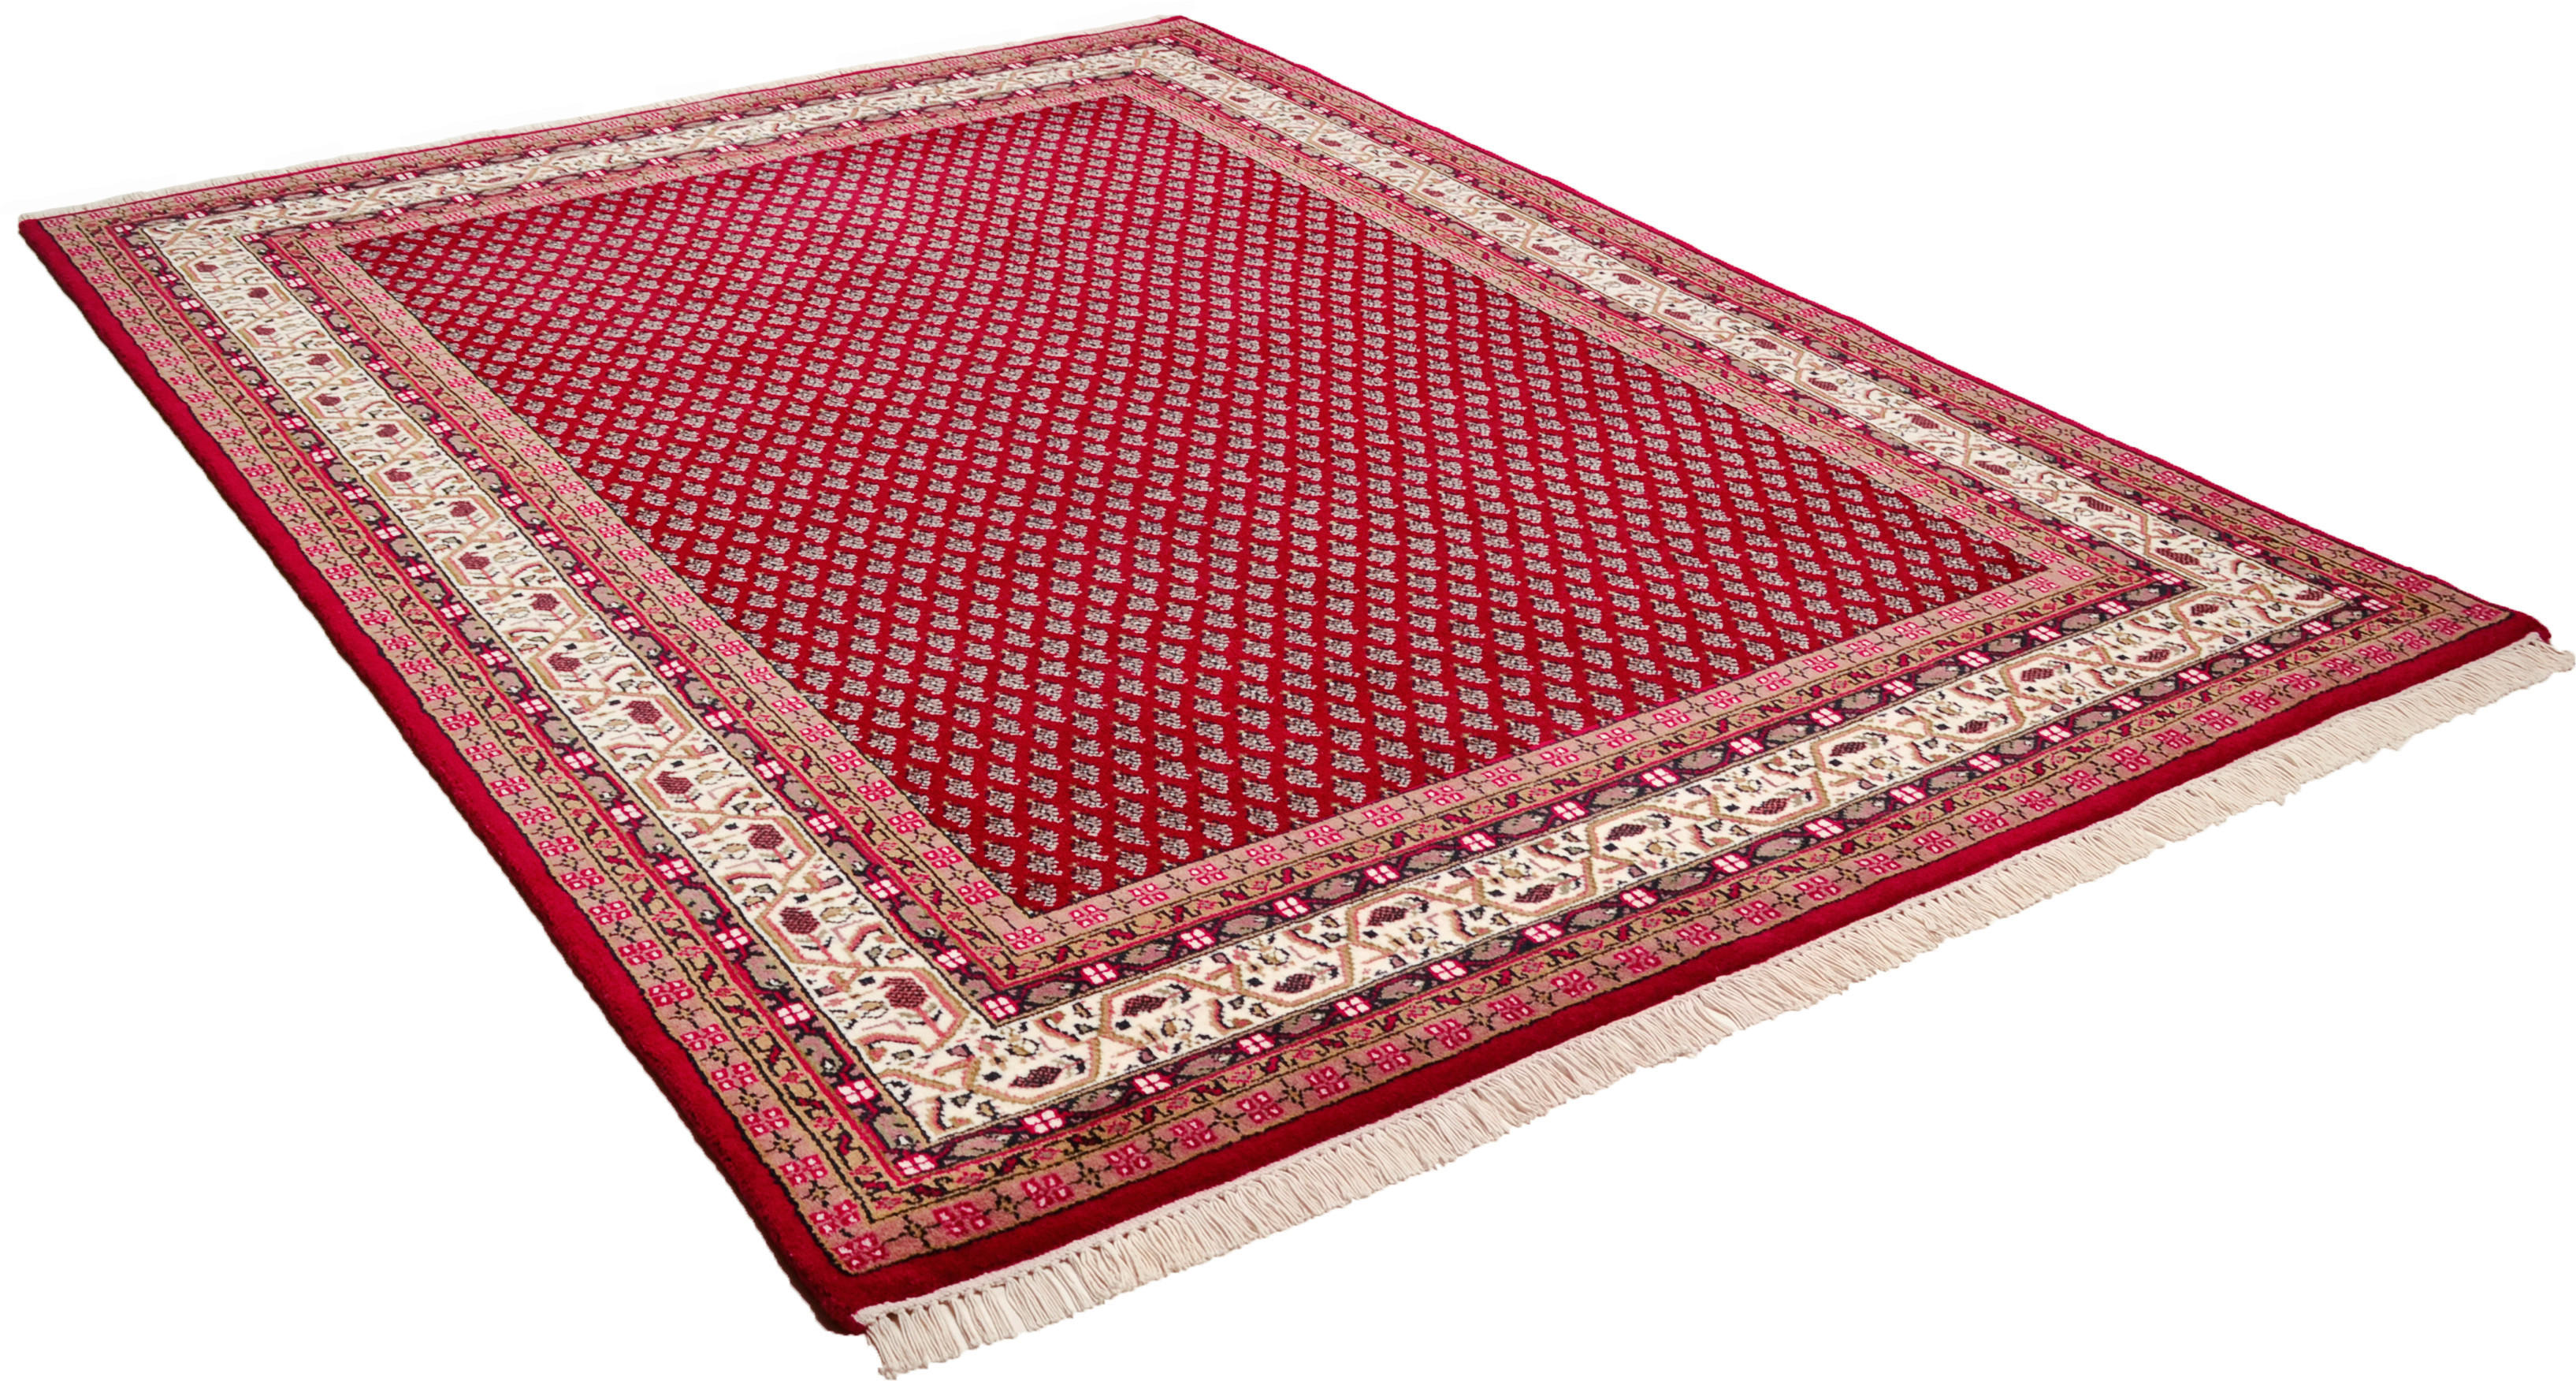 ORIJENTALNI TEPIH  krem, crvena     - crvena/krem, Konvencionalno, tekstil (70/140cm)